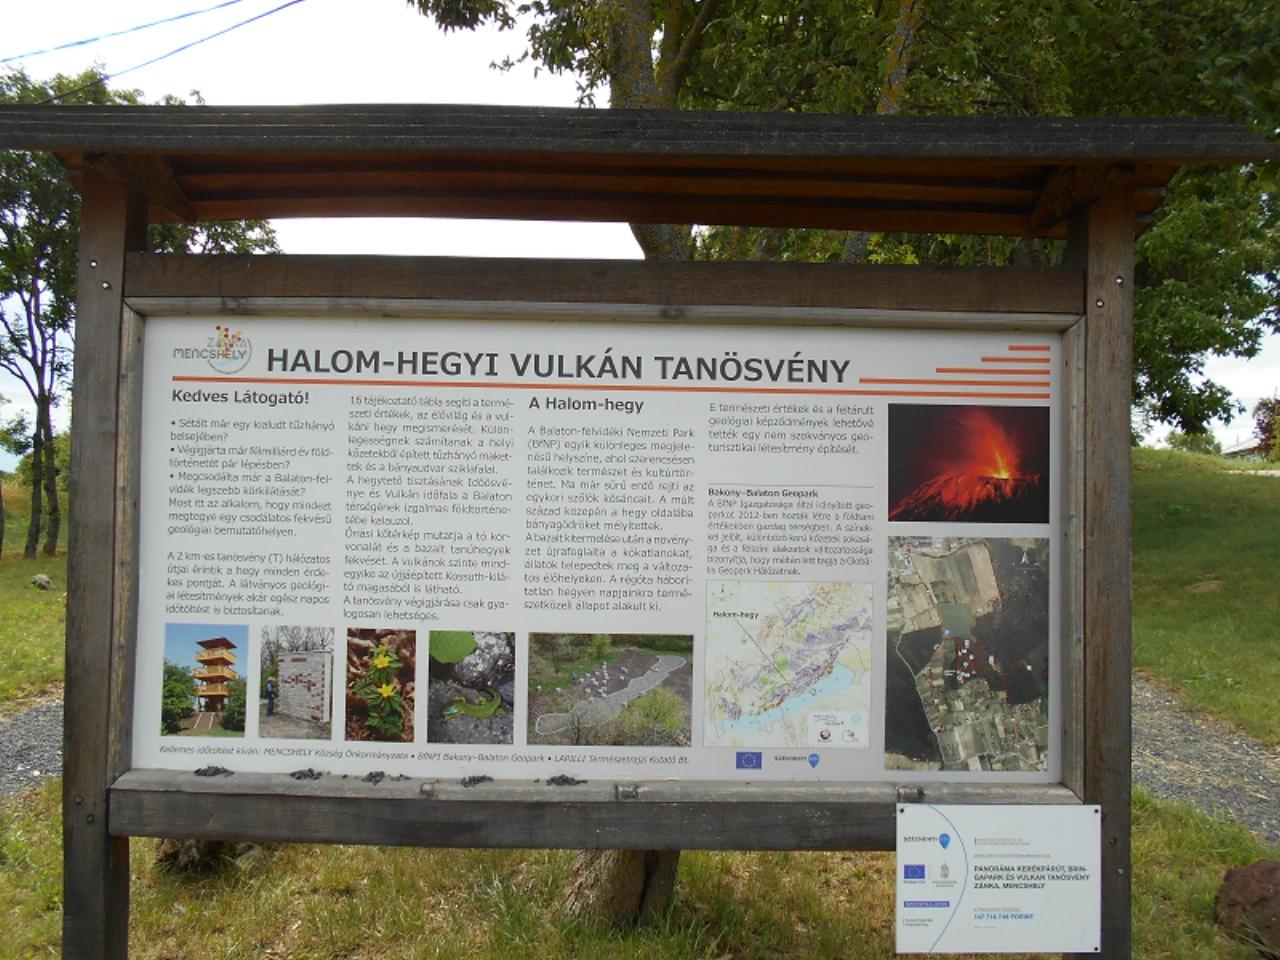 Halom-hegyi vulkán tanösvény nevü látnivaló 2. számú fényképe